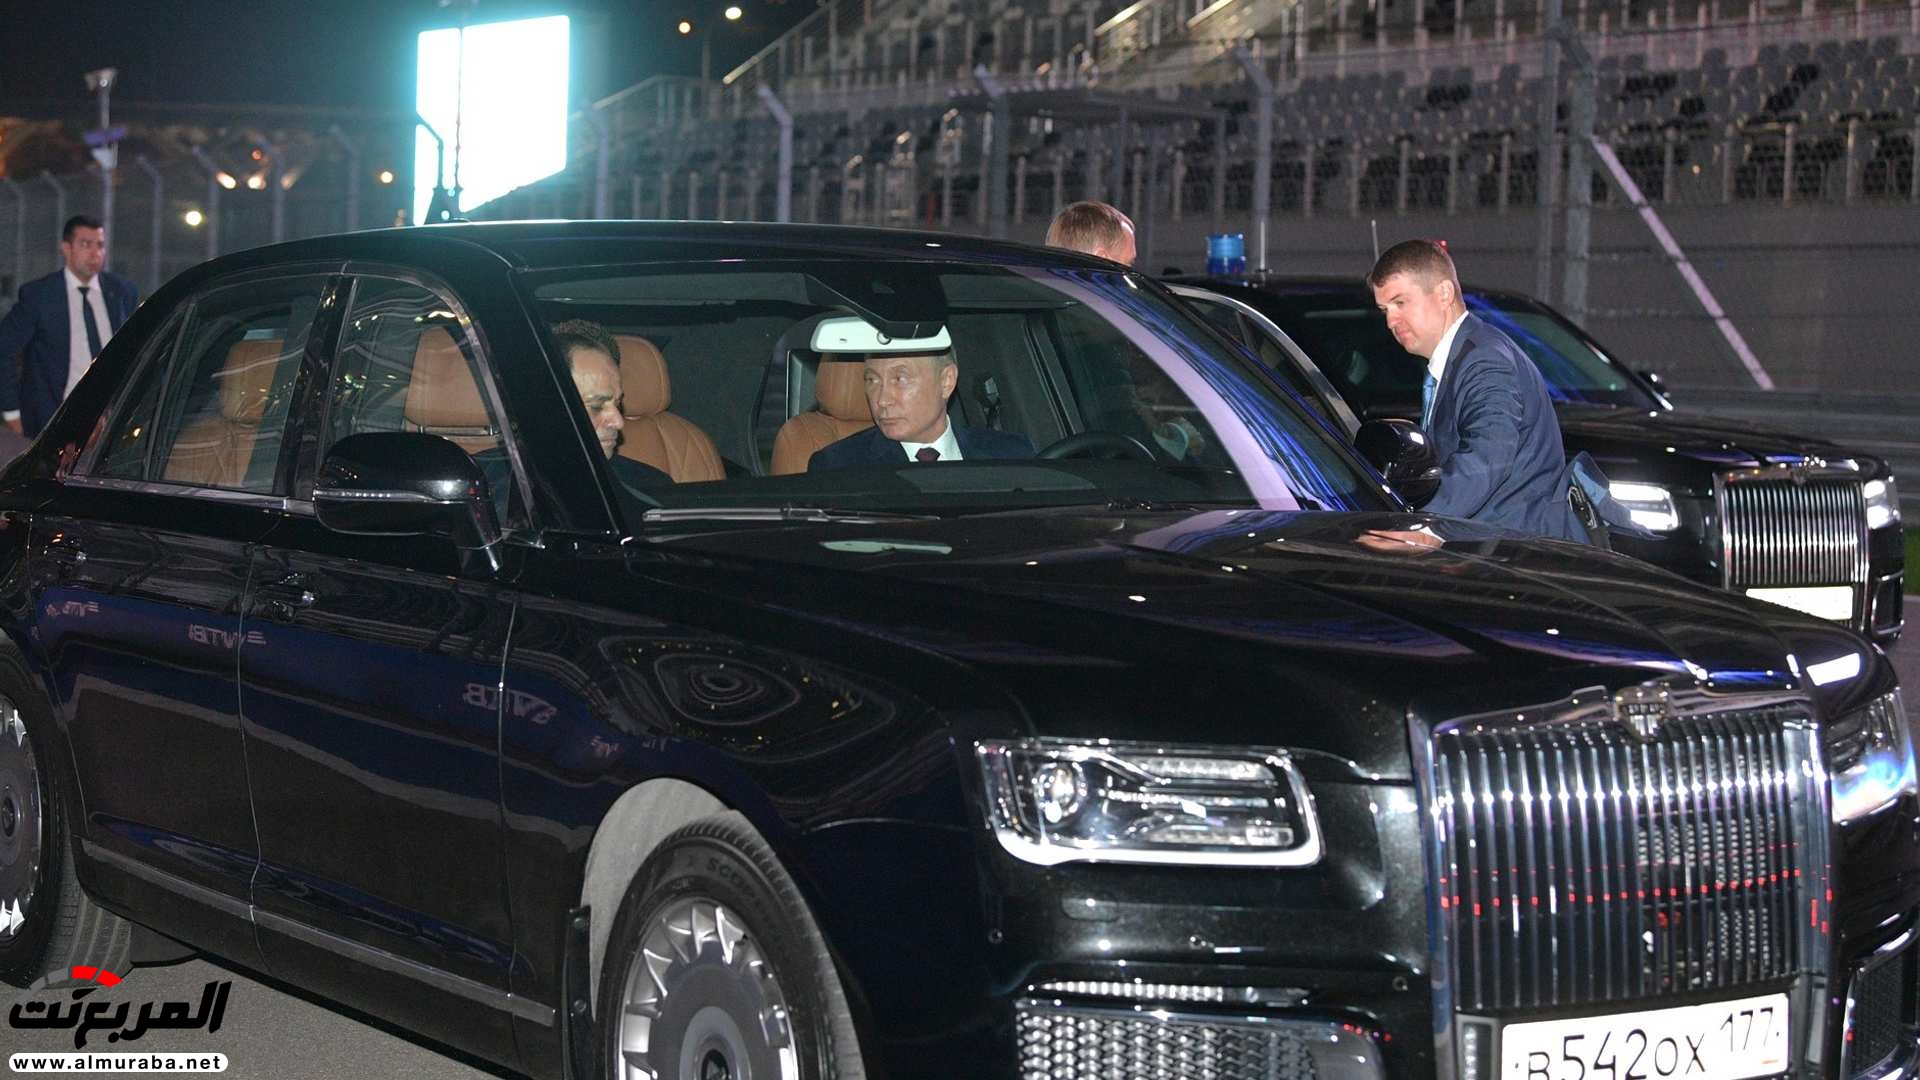 "بالصور" بوتين يصطحب السيسي في جولة داخل ليموزين يقودها بنفسه 23